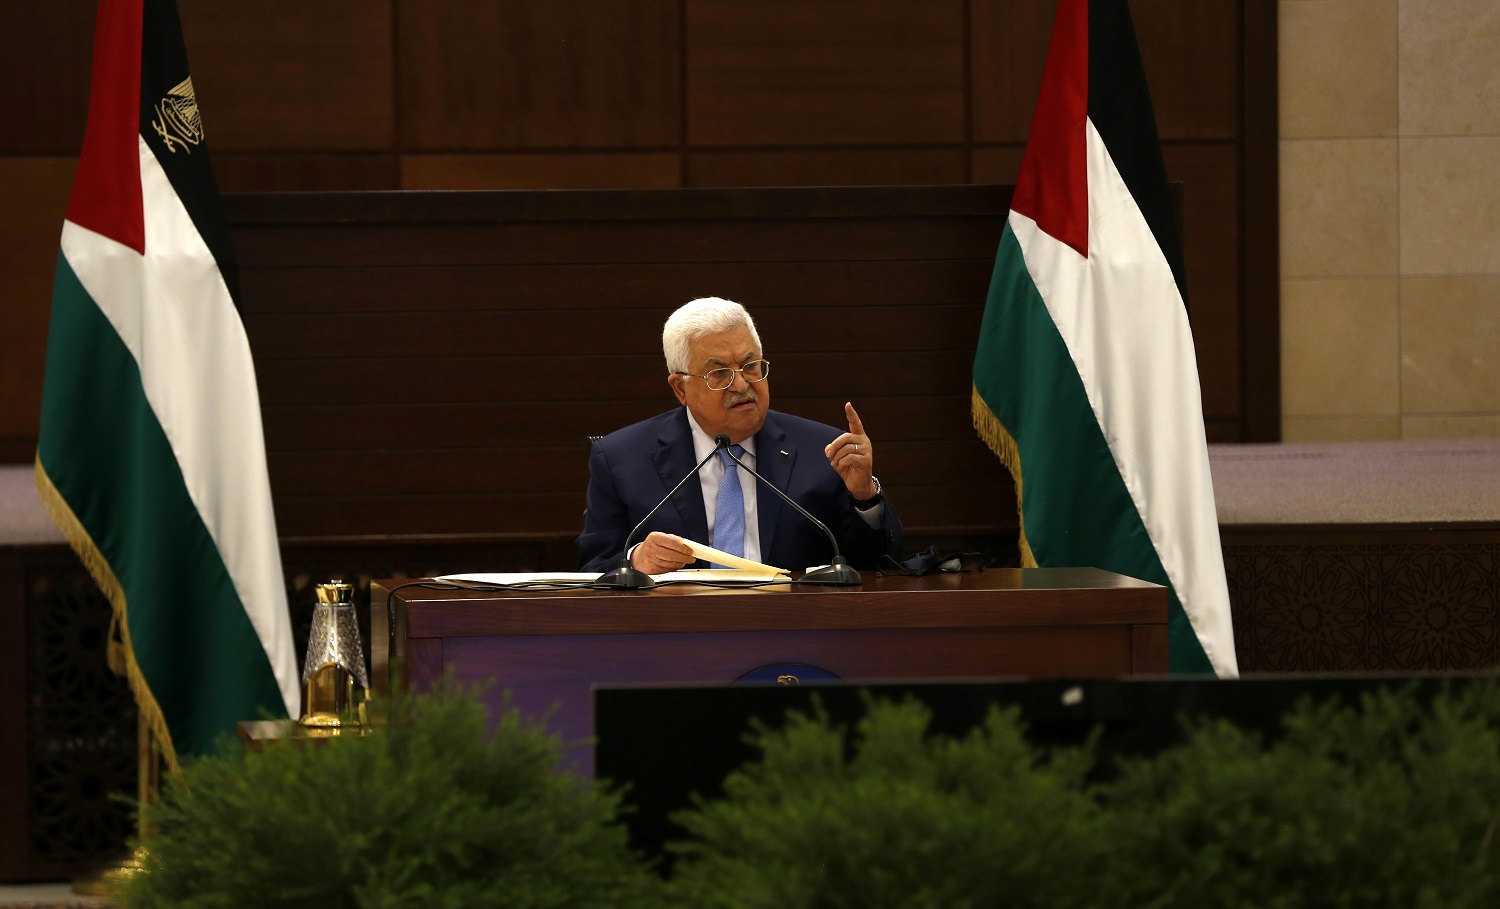 القيادة الفلسطينية تقرر وقف جميع الاتصالات واللقاءات مع الجانب الإسرائيلي والاستمرار بوقف التنسيق الأمني